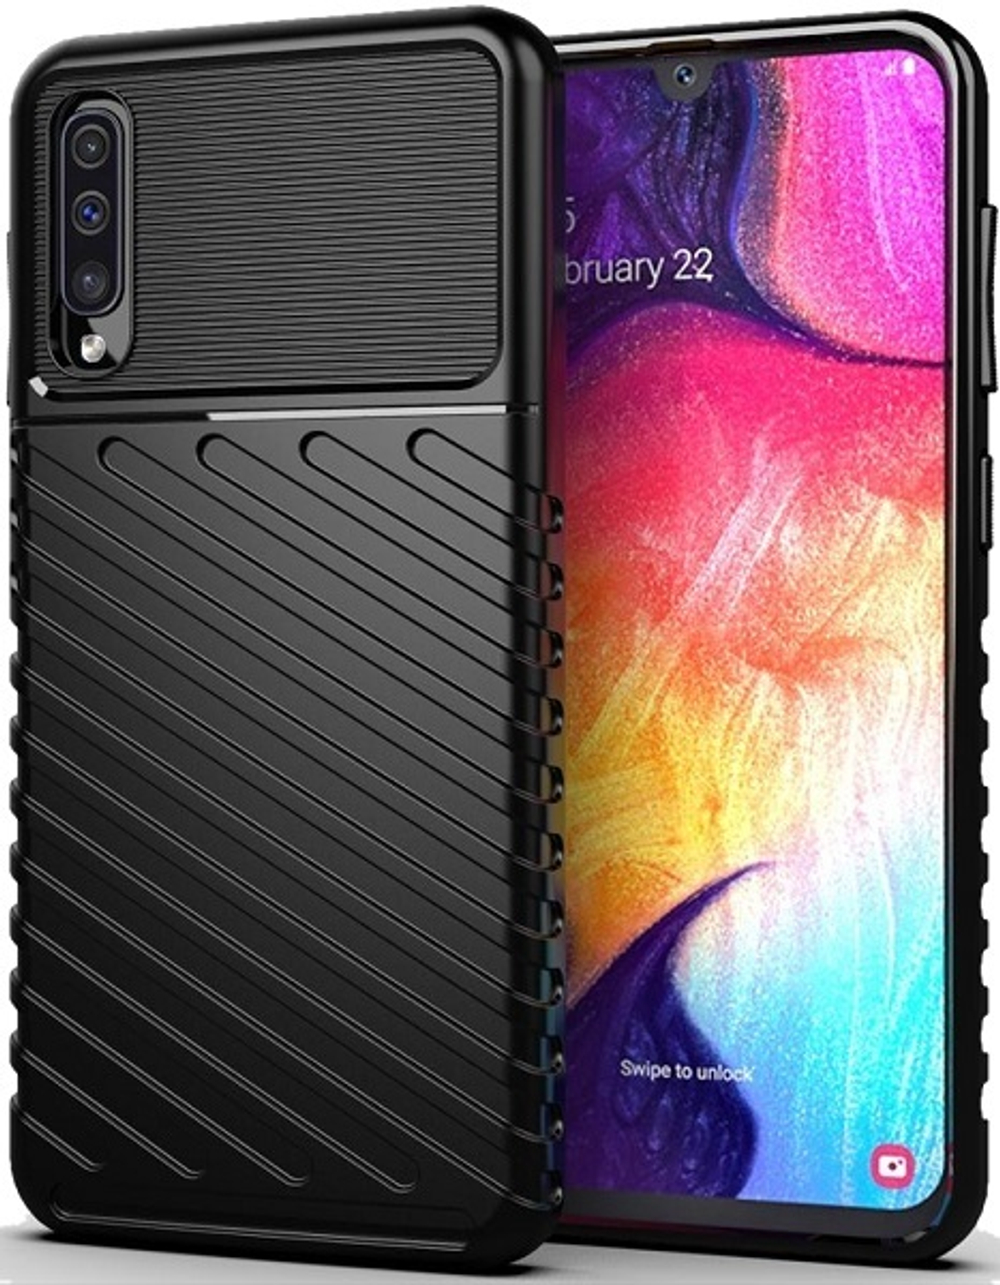 Чехол для Samsung Galaxy A50 (Galaxy A30S, A50S) цвет Black (черный), серия Onyx от Caseport